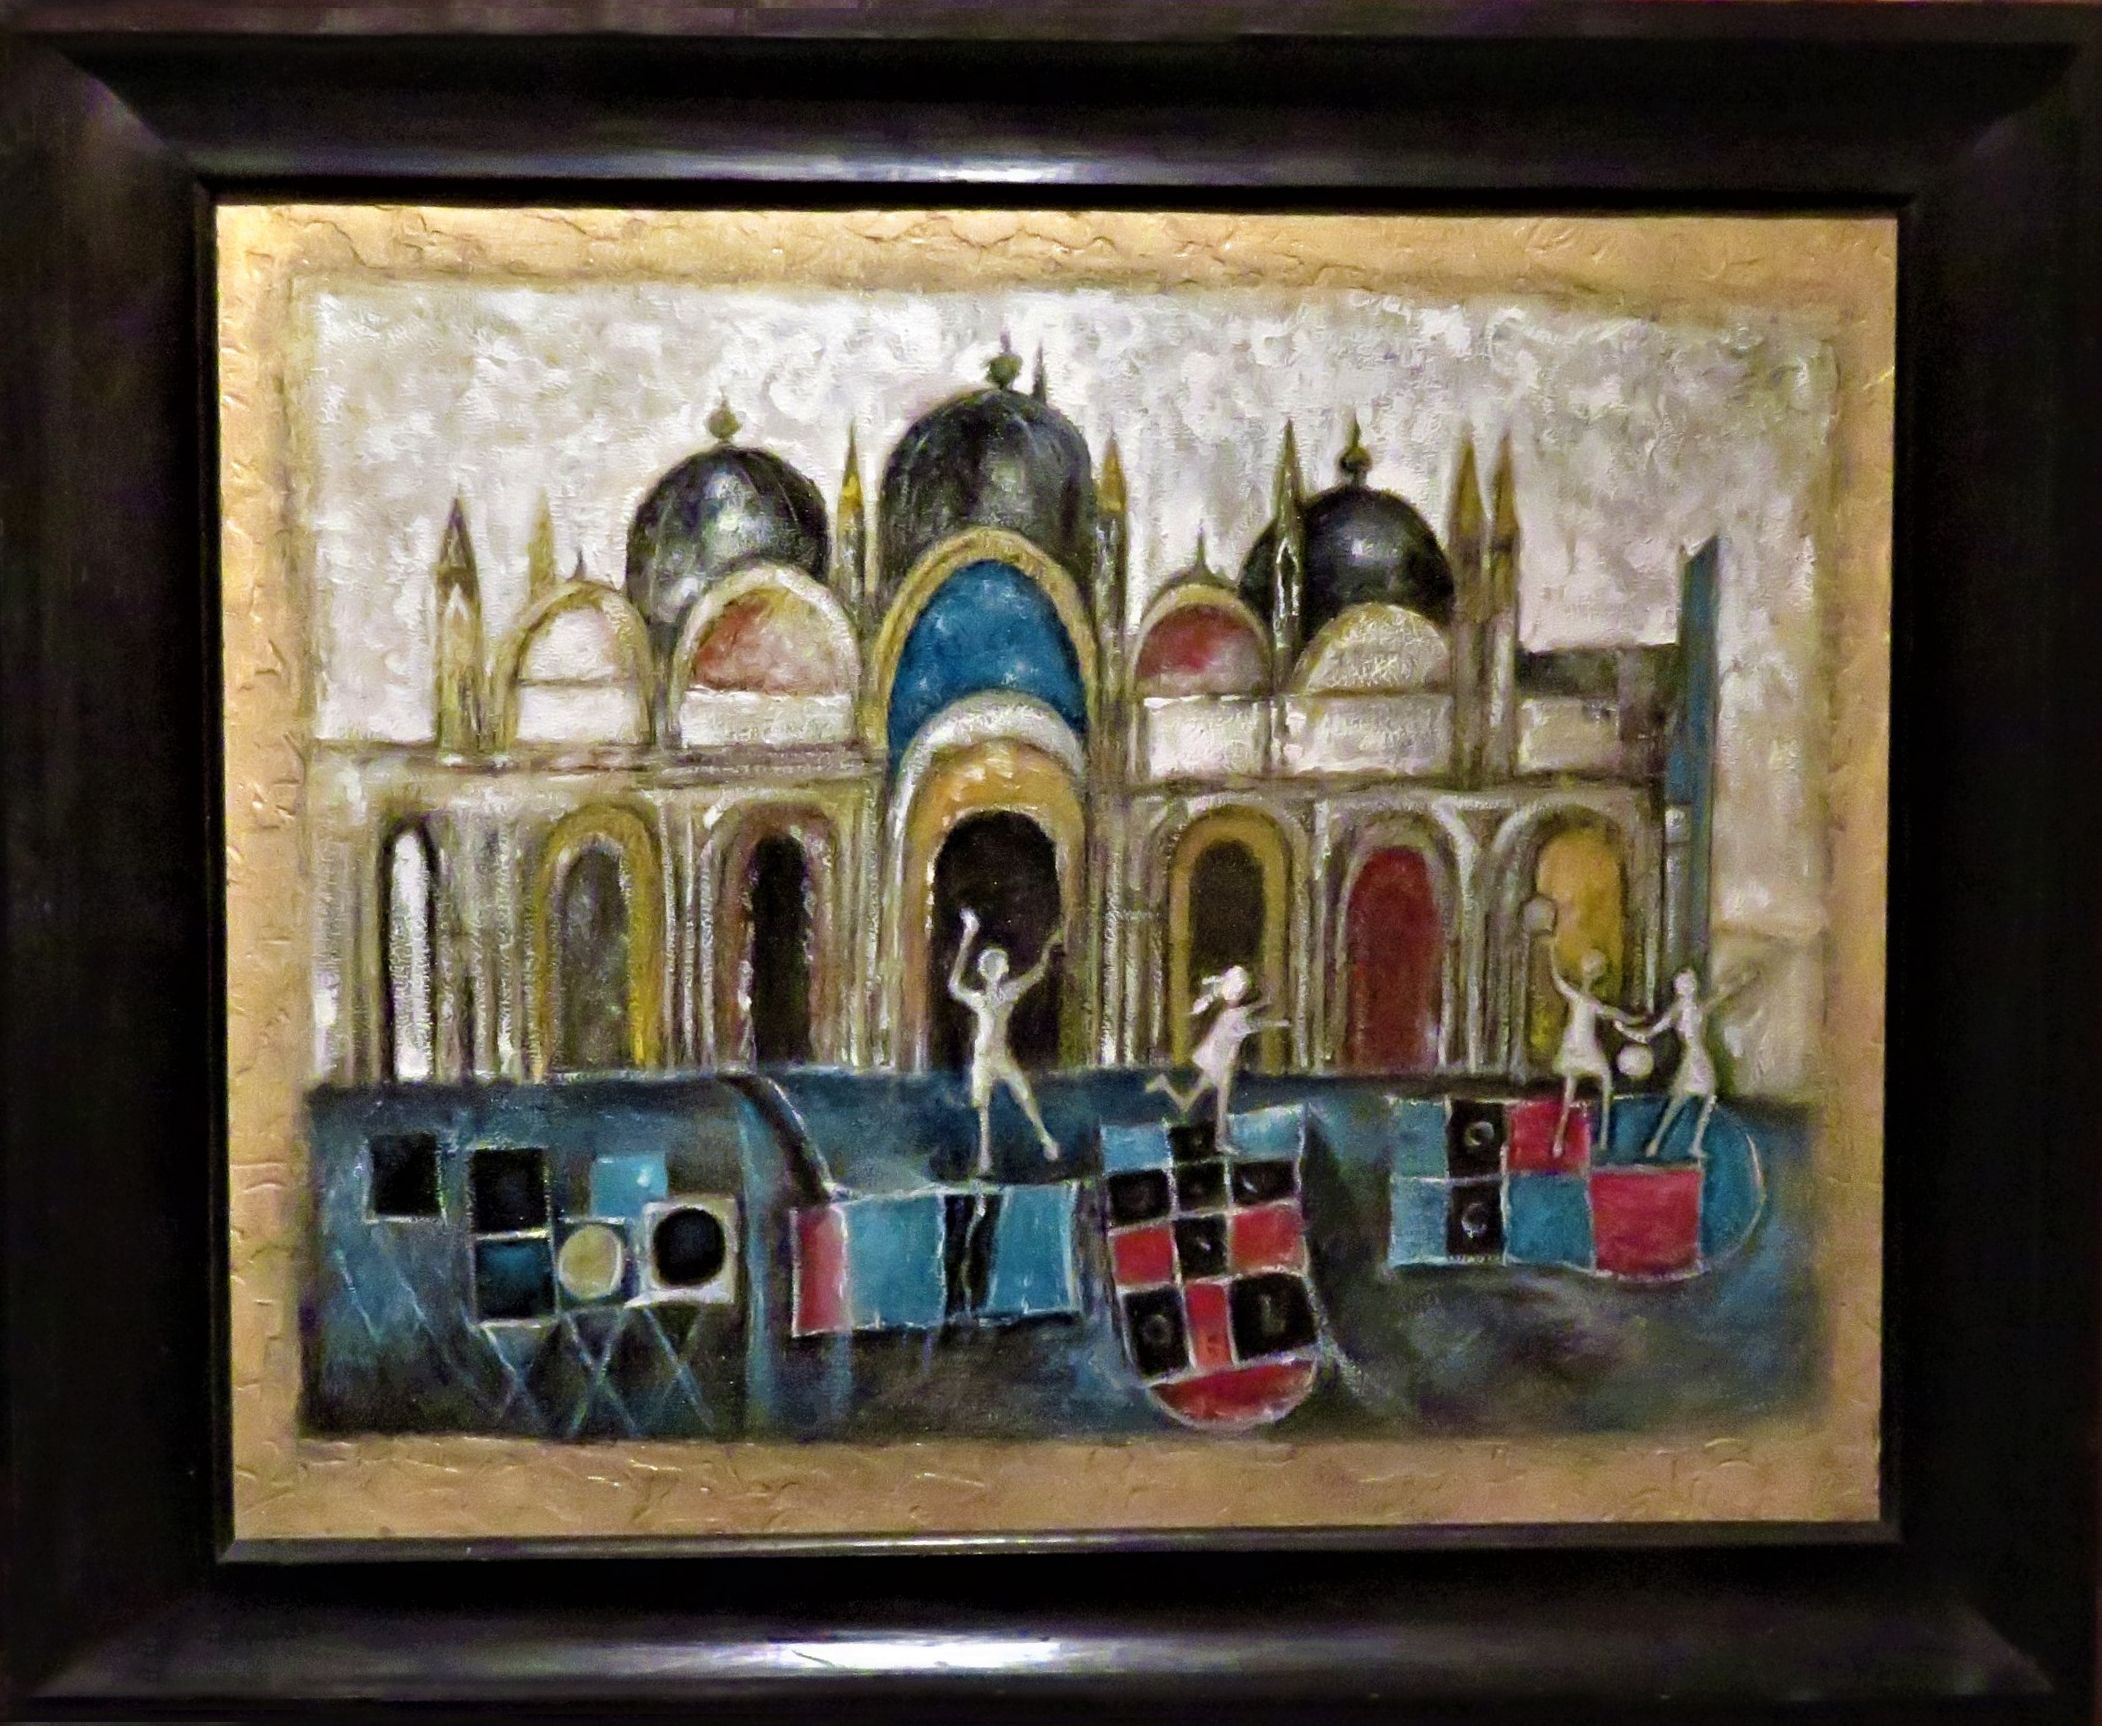 Tributo a Franco Gentilini Venezia Cm. 84,5x70,5x6